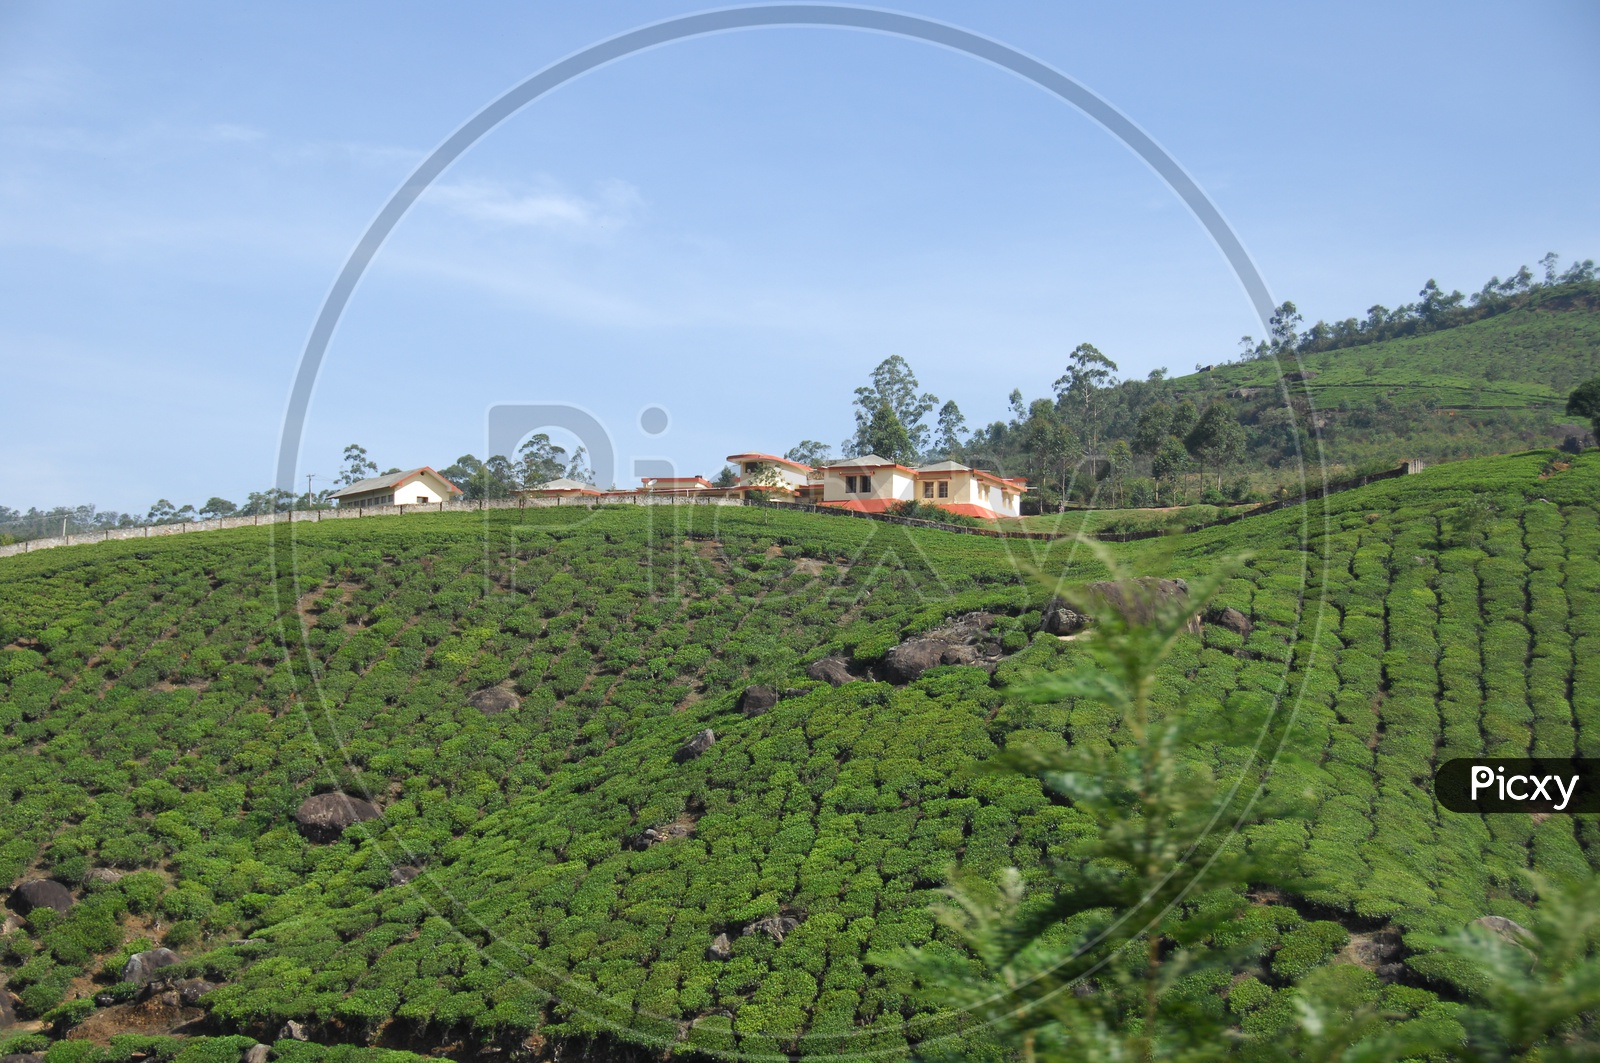 Landscape view of tea plant  fields in Kerala